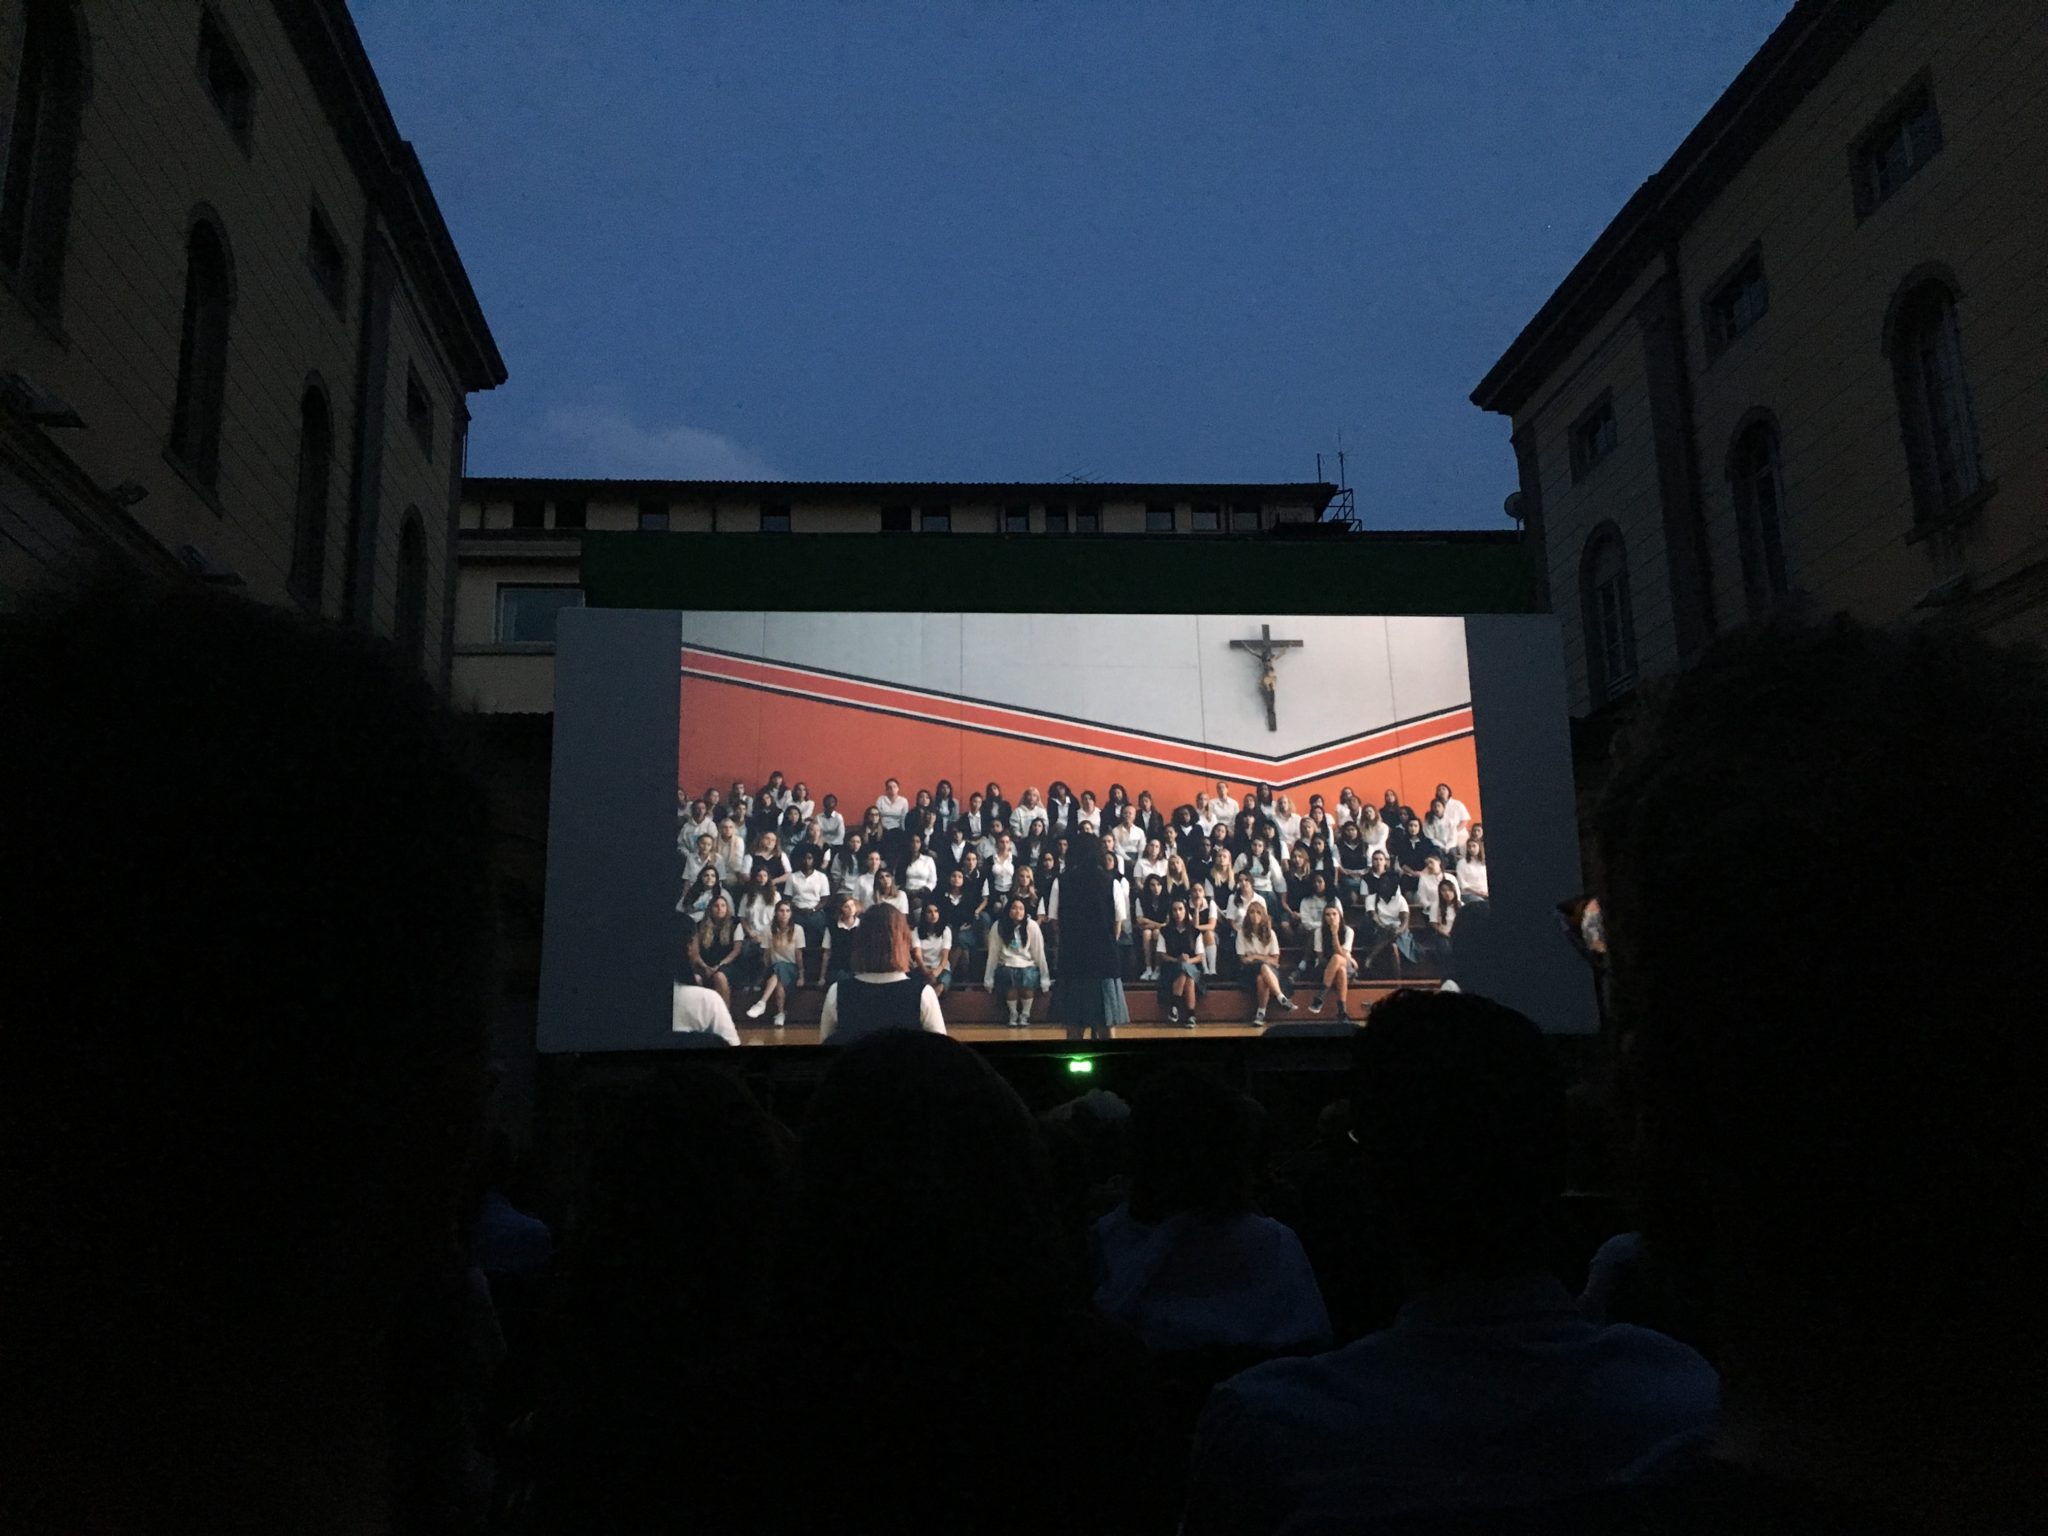 Per la bella stagione, i migliori film della stagione invernale nel cortile della biblioteca Caversazzi di Bergamo: 400 posti a sedere, fino a settembre